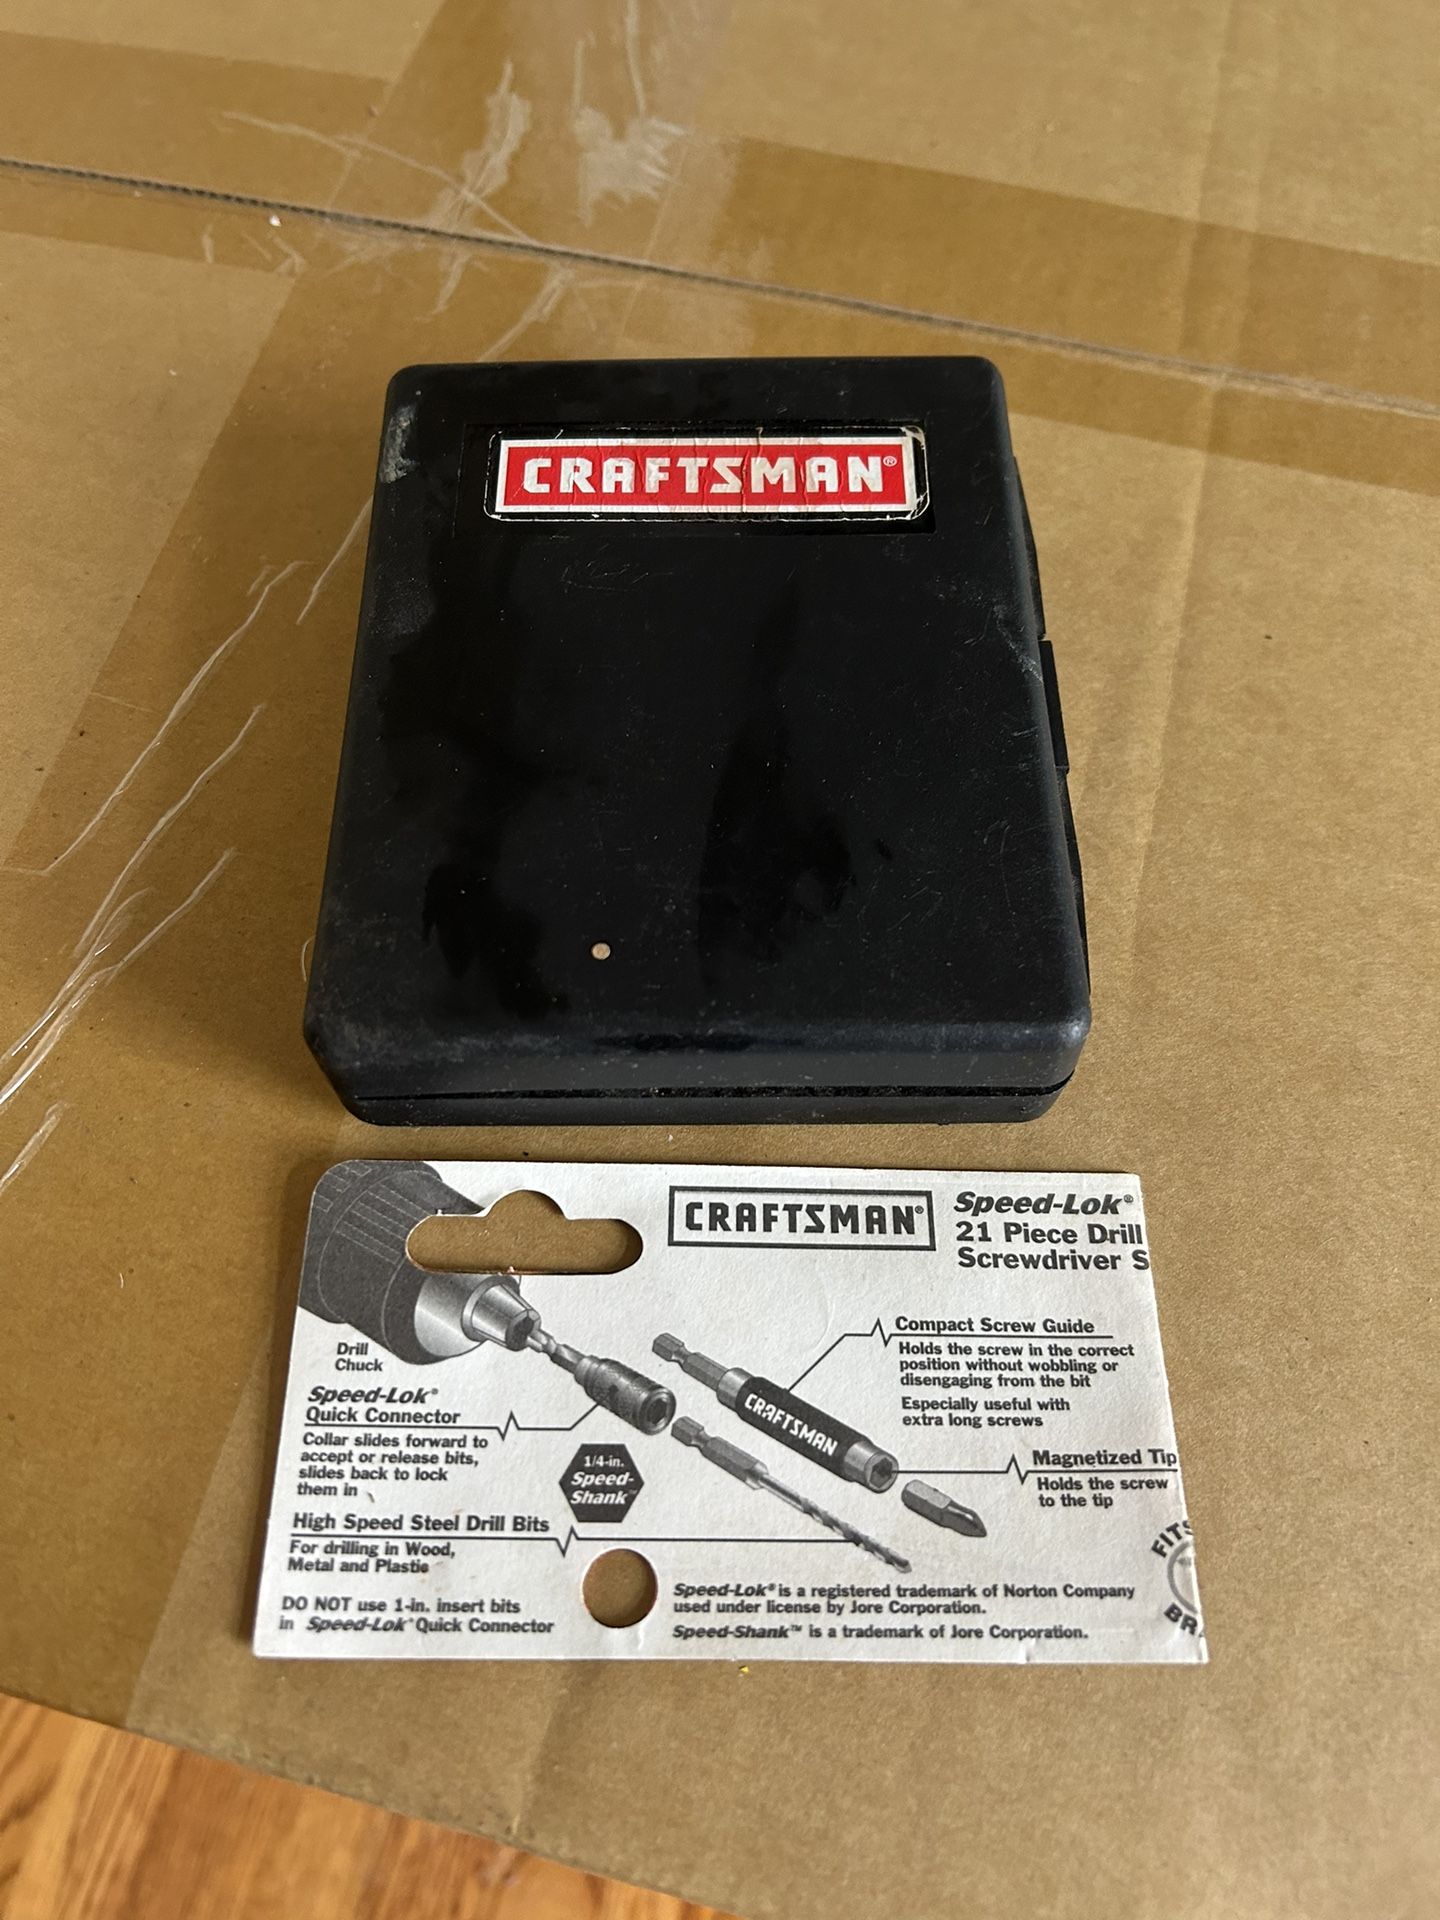 Craftsman Speed lol 21 Pc. Drill-Screwdriver Set